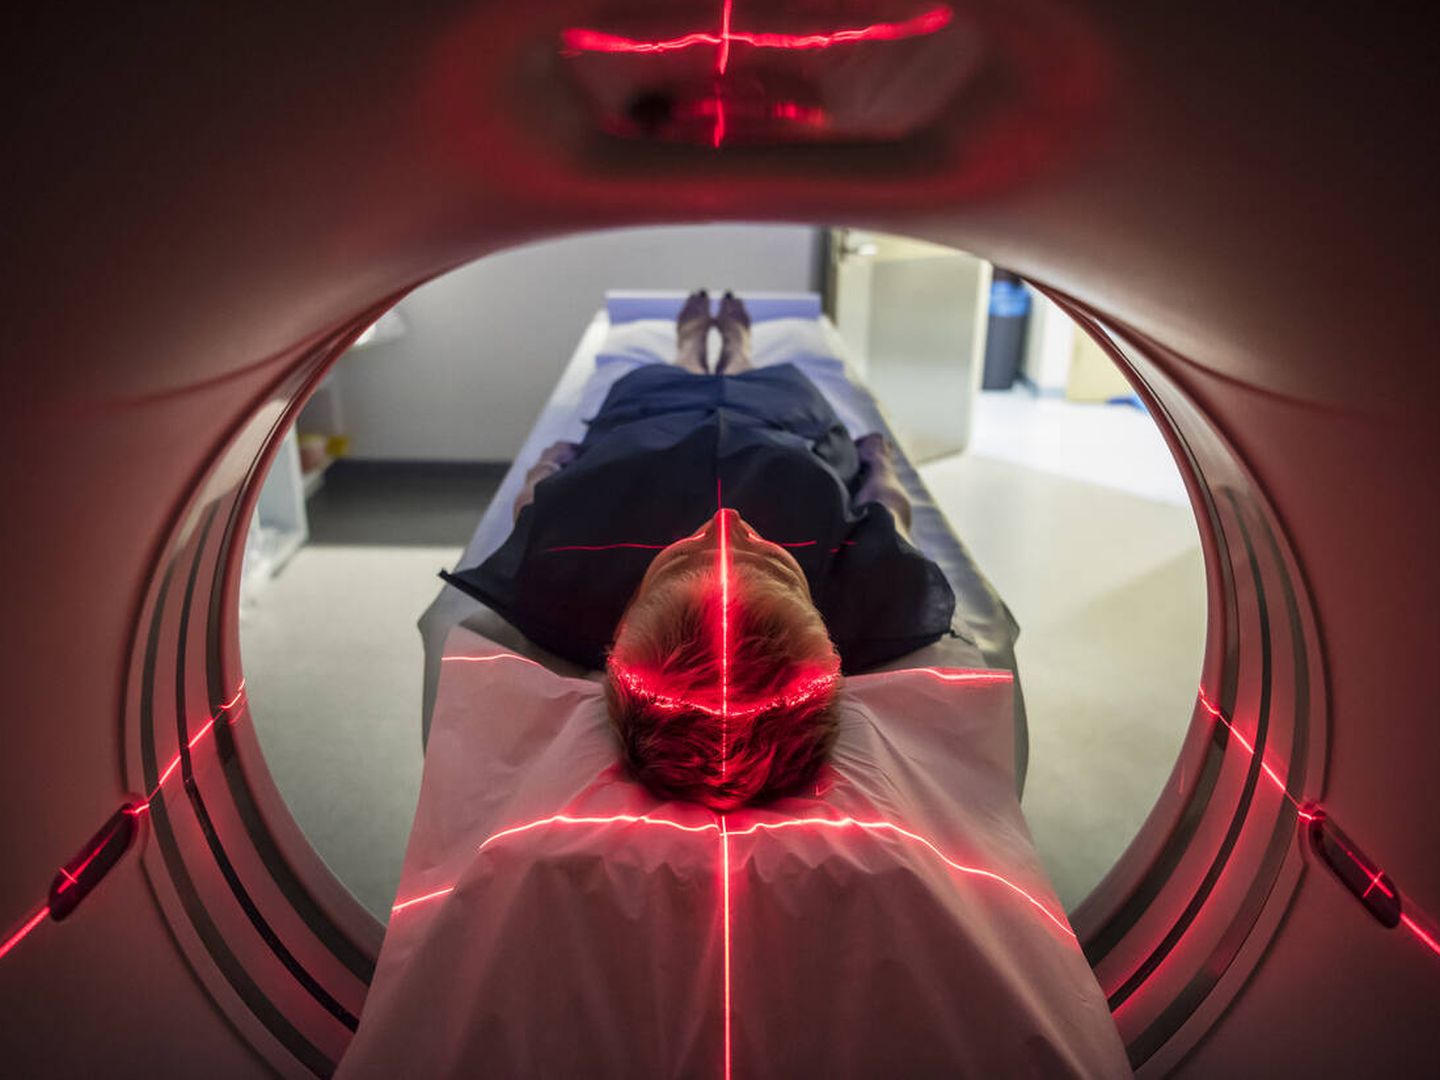 El tratamiento es menos radioactivo que una tomografía de cuerpo completo. (iStock)